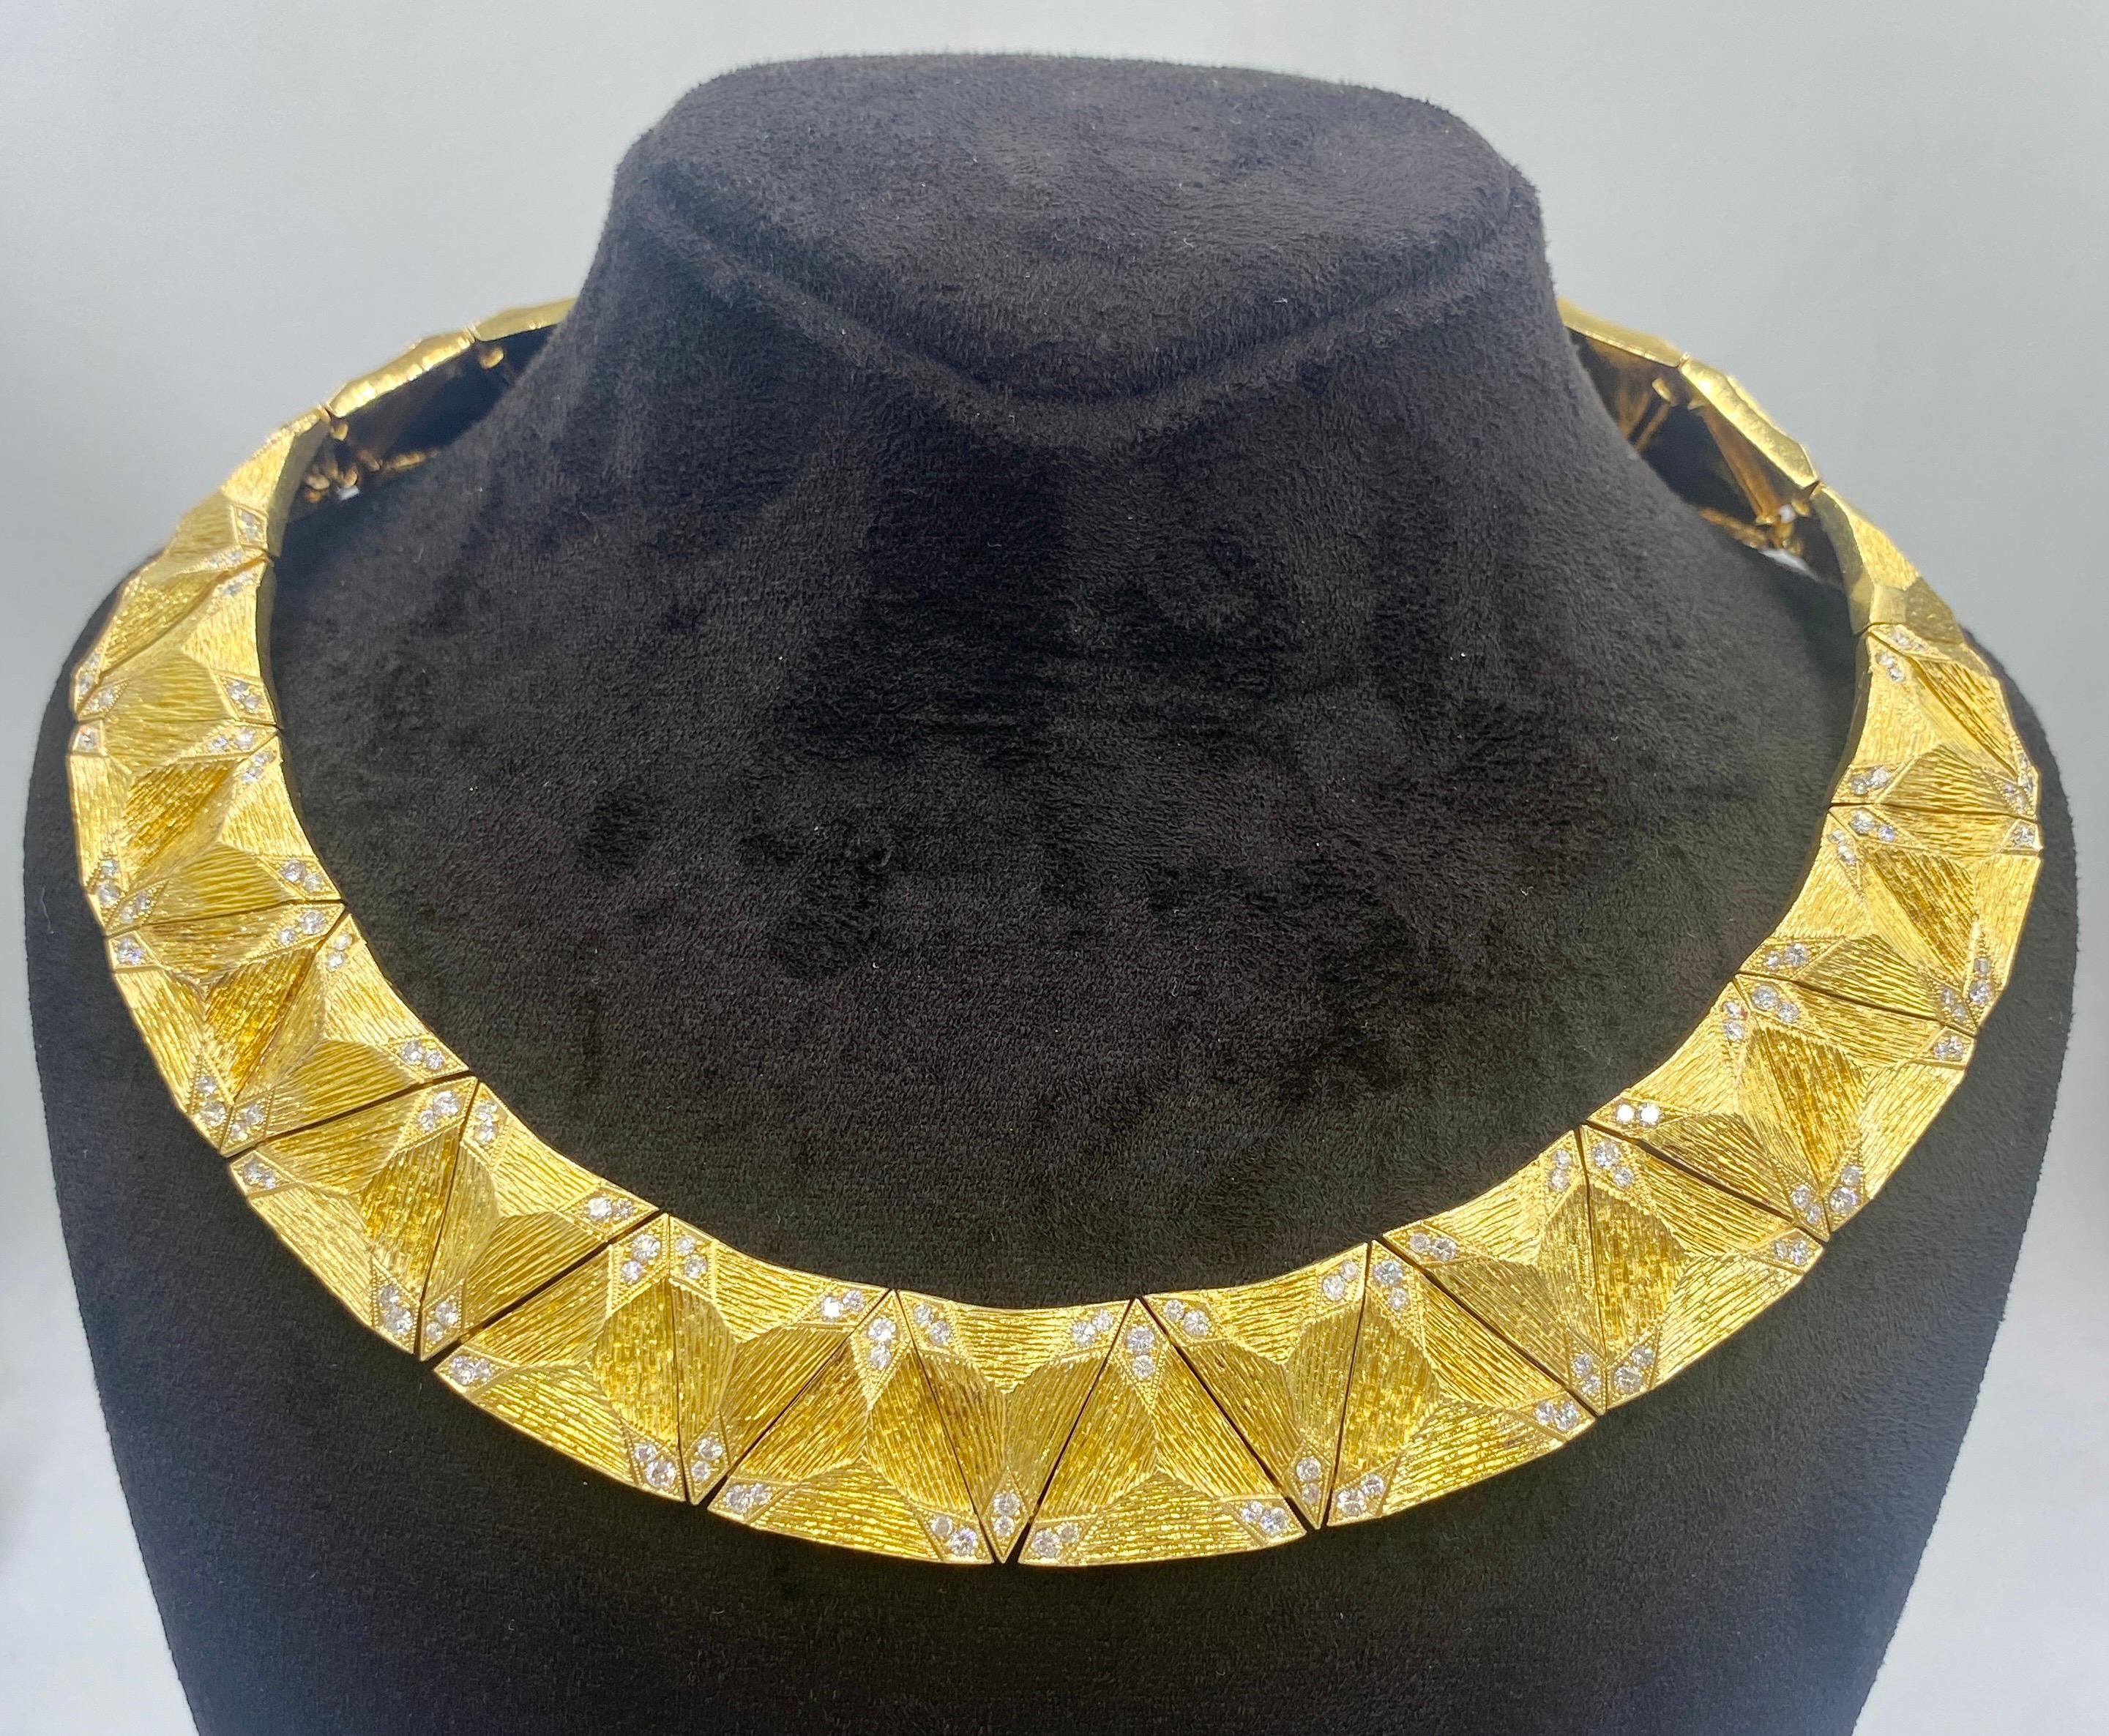 Diese bemerkenswerte Halskette aus 18-karätigem Gold der 1970er Jahre ist komplett handgefertigt und handgraviert. Die Ecken jedes dreieckigen Teils sind mit kleinen Diamanten besetzt, die das Funkeln des Kropfbandes noch verstärken. Obwohl es ein